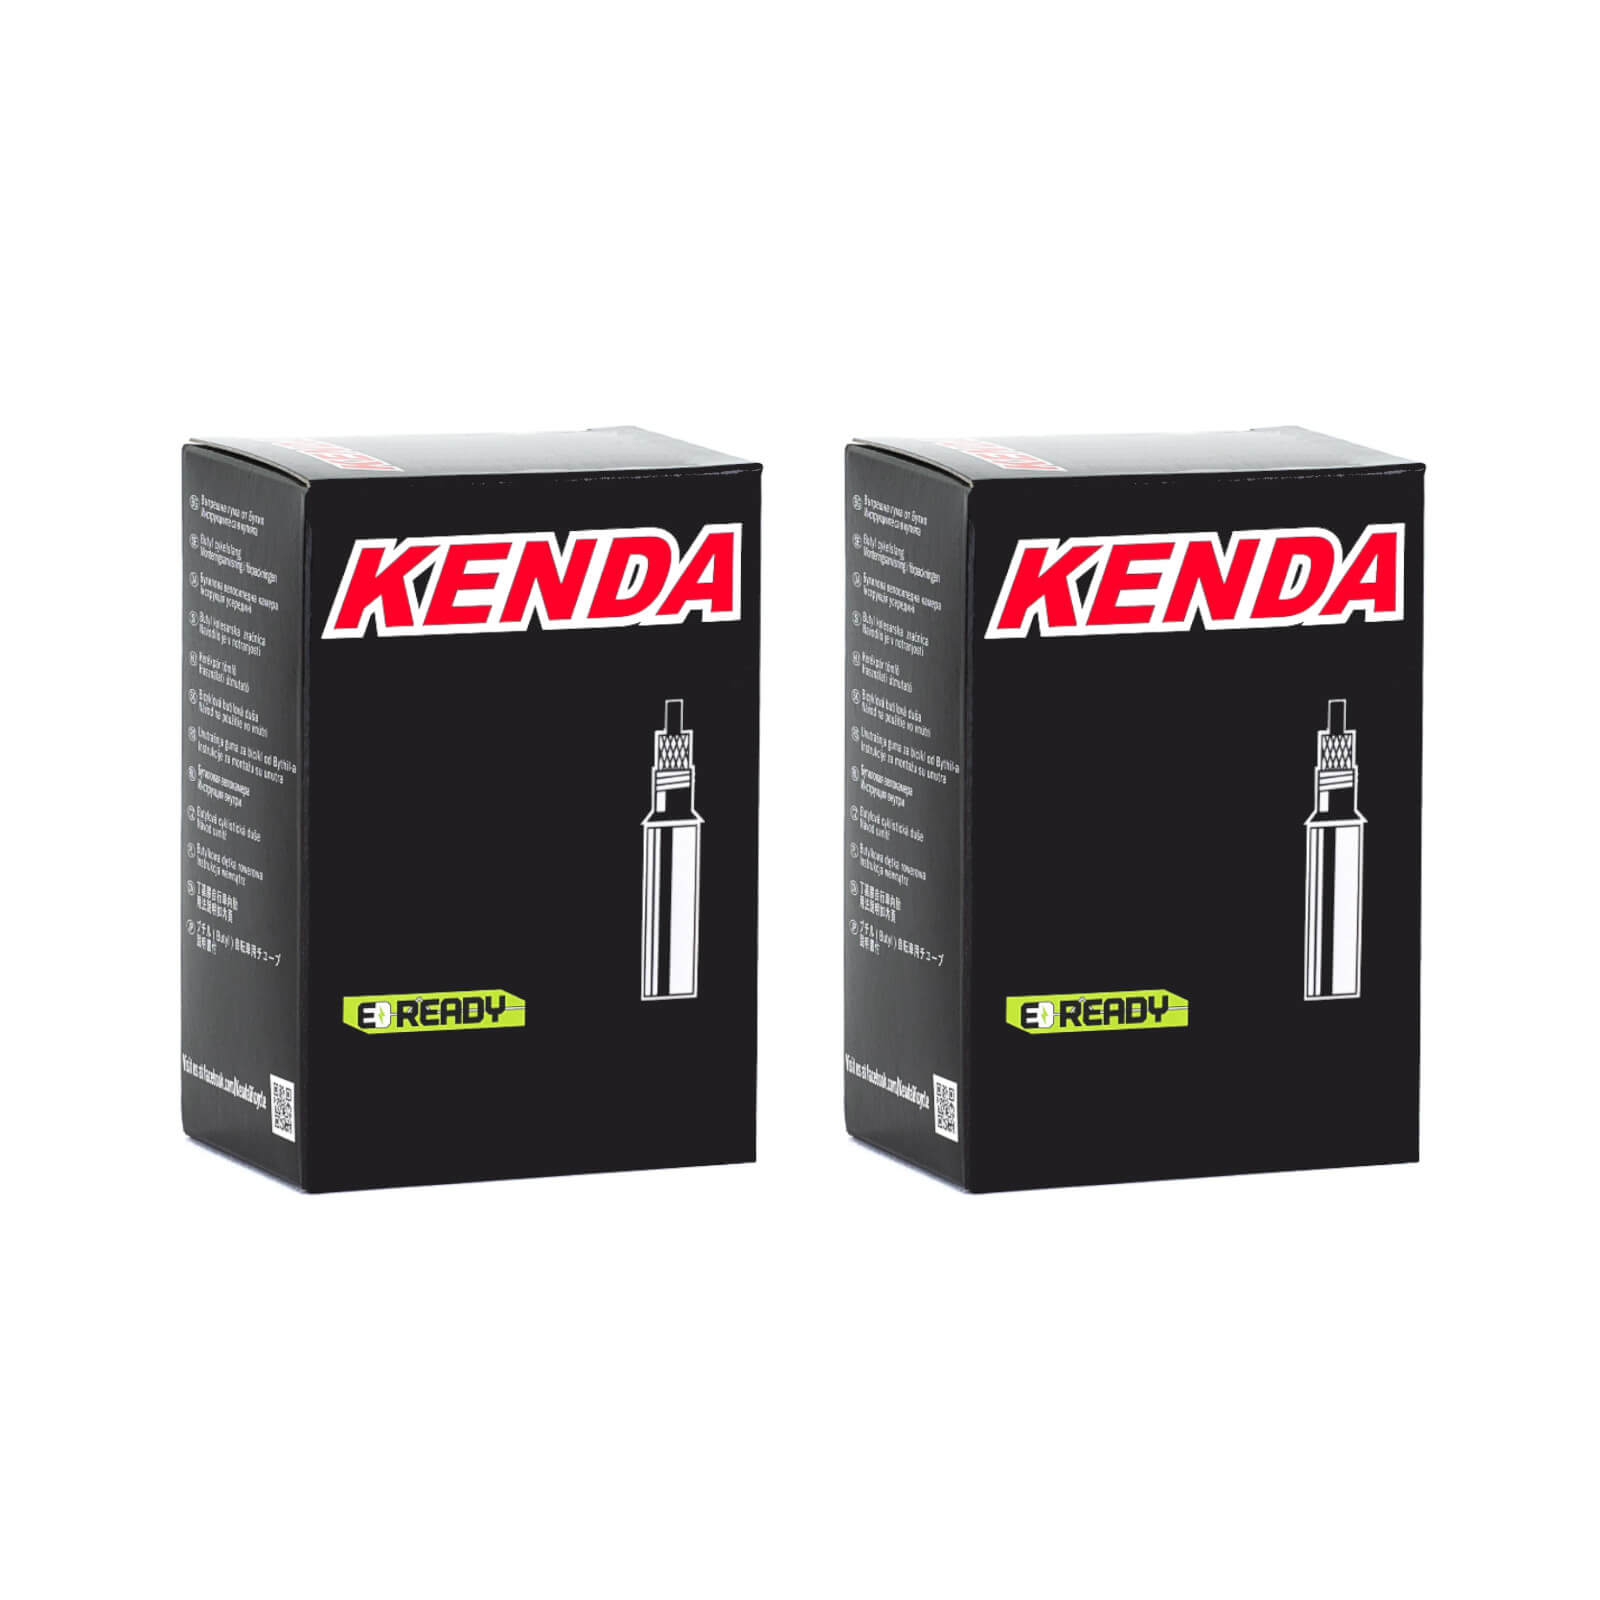 Kenda 700x20-28c Removable Core SL 80mm 700c Presta Valve Bike Inner Tube Pack of 2